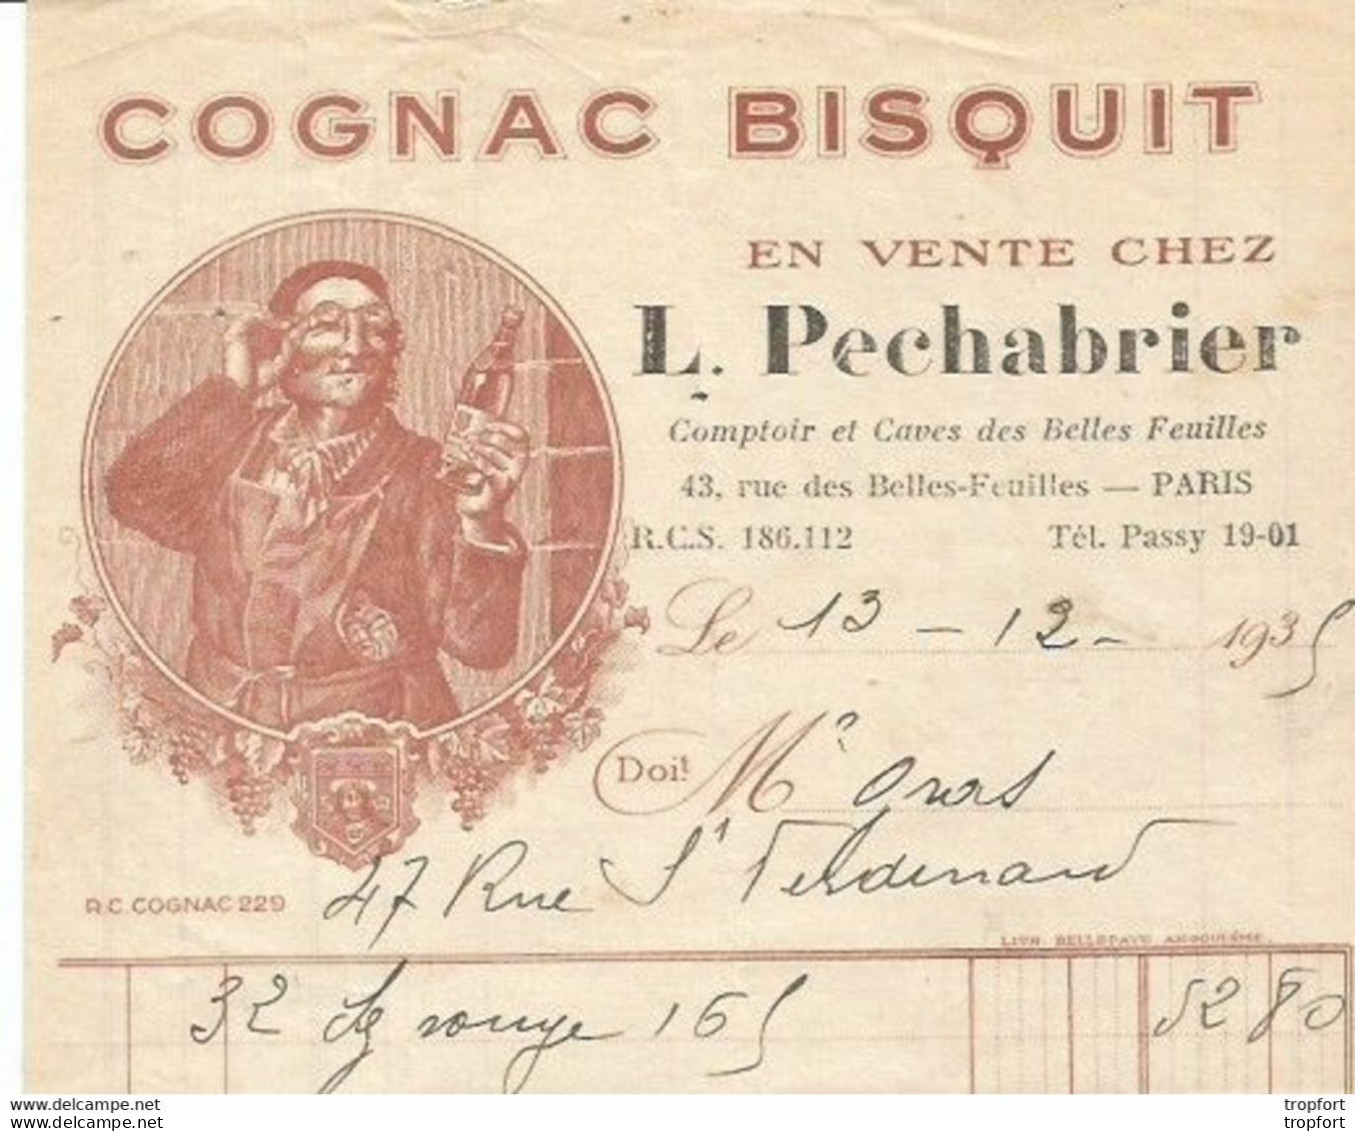 M11 Cpa / Old Invoice / Lettre Facture Ancienne 1935 COGNAC BISQUIT L Pechabrier PARIS - Artigianato